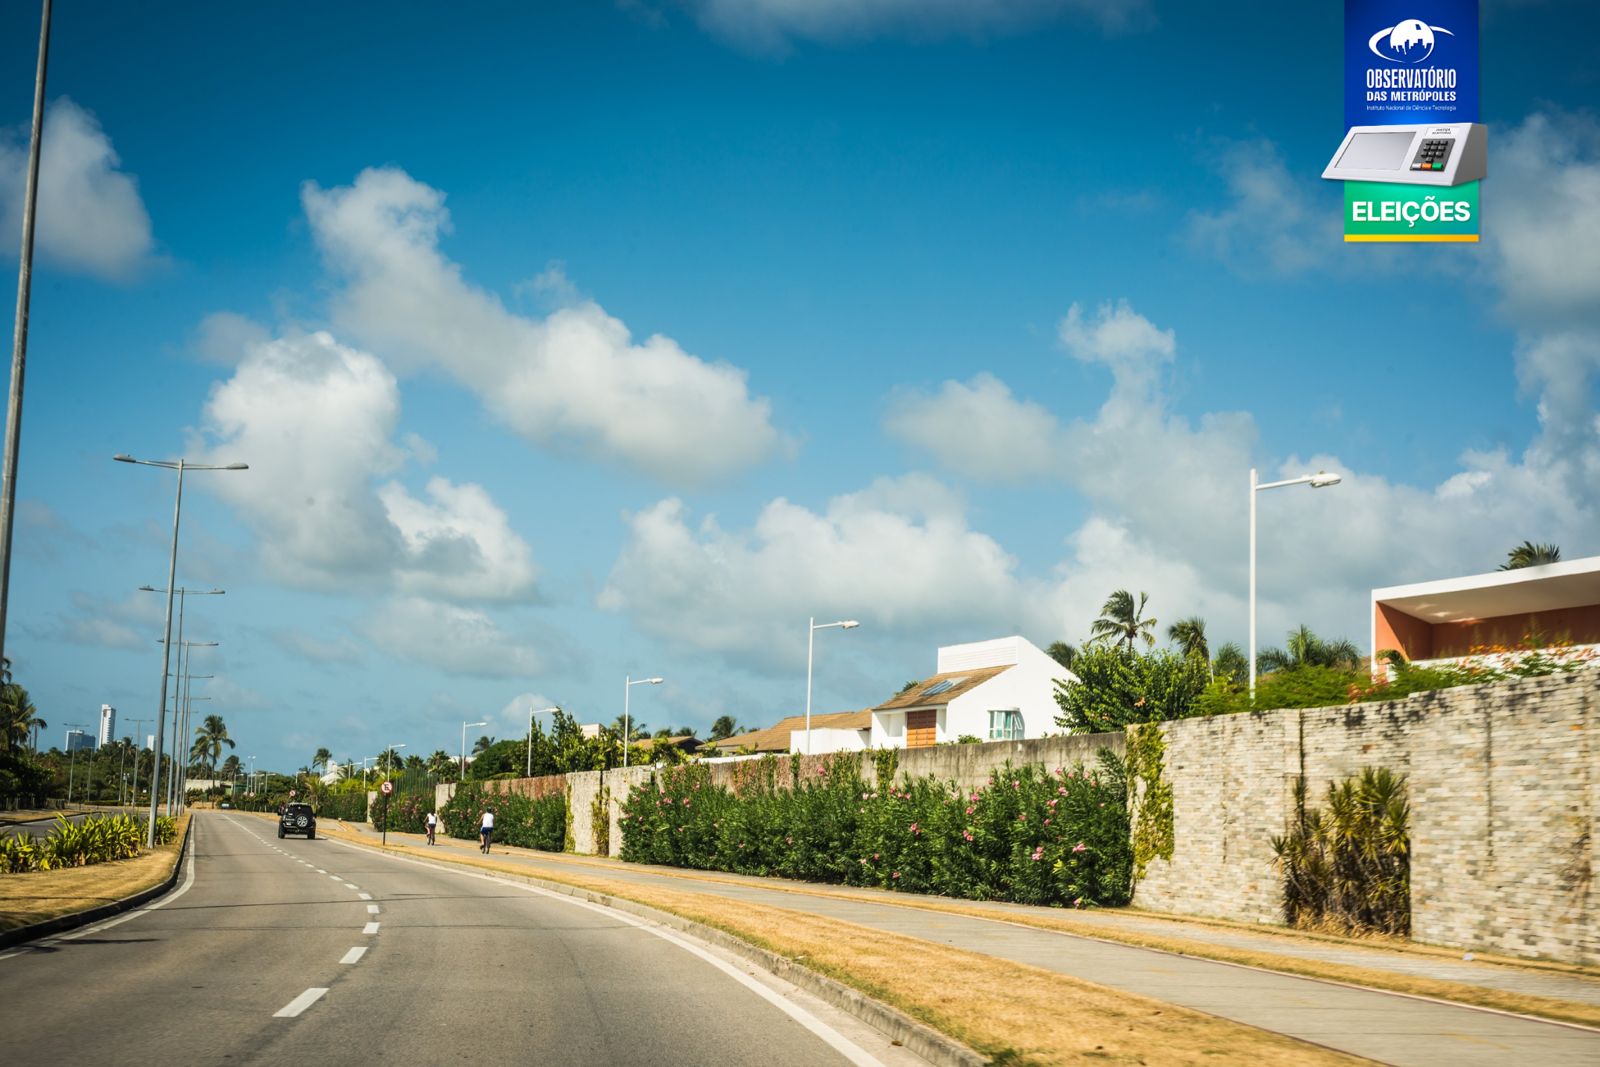 Nesta foto, vê-se uma estrada asfaltada com veículos, cercada por vegetação e casas com muros altos, sob um céu azul com nuvens; no canto superior direito, há um logo e texto do Observatório das Metrópoles.